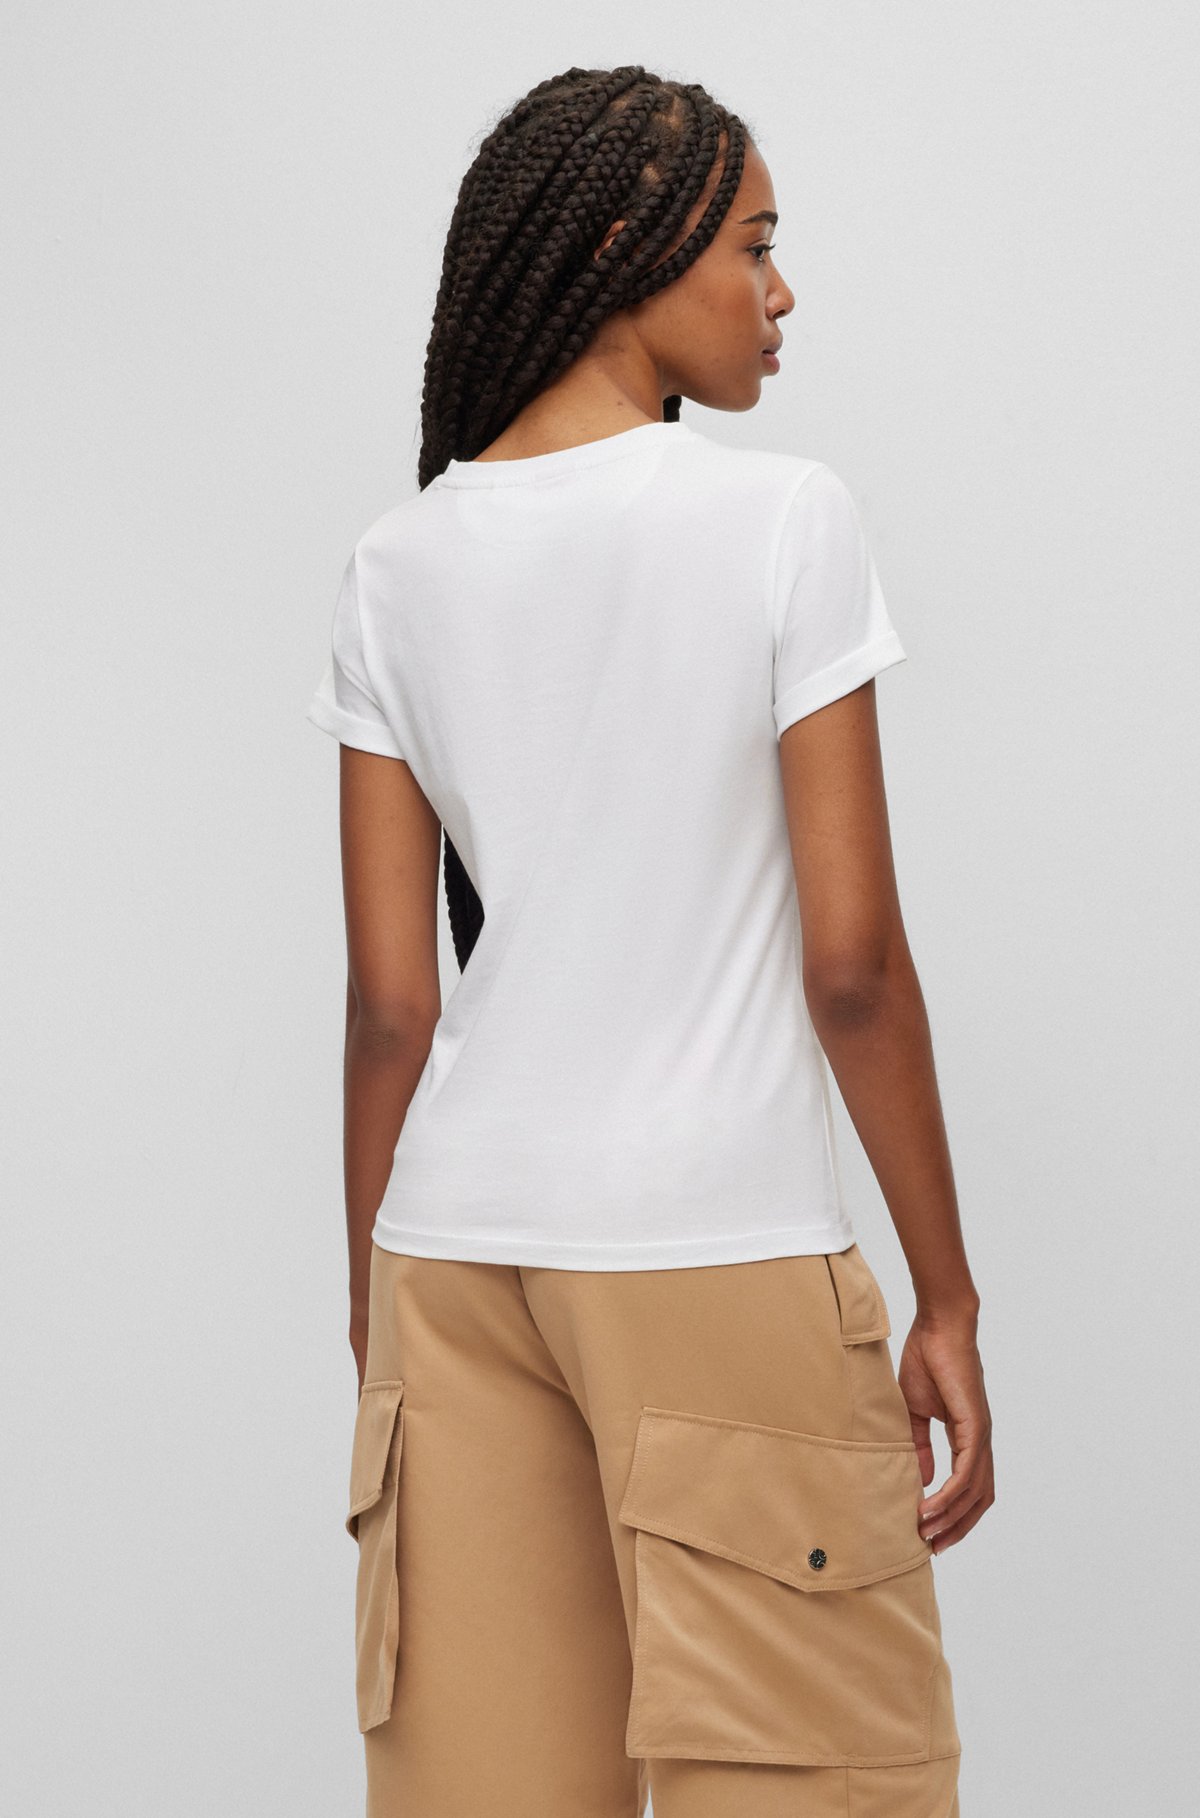 로고 라벨 슬림 핏 코튼 티셔츠, 화이트